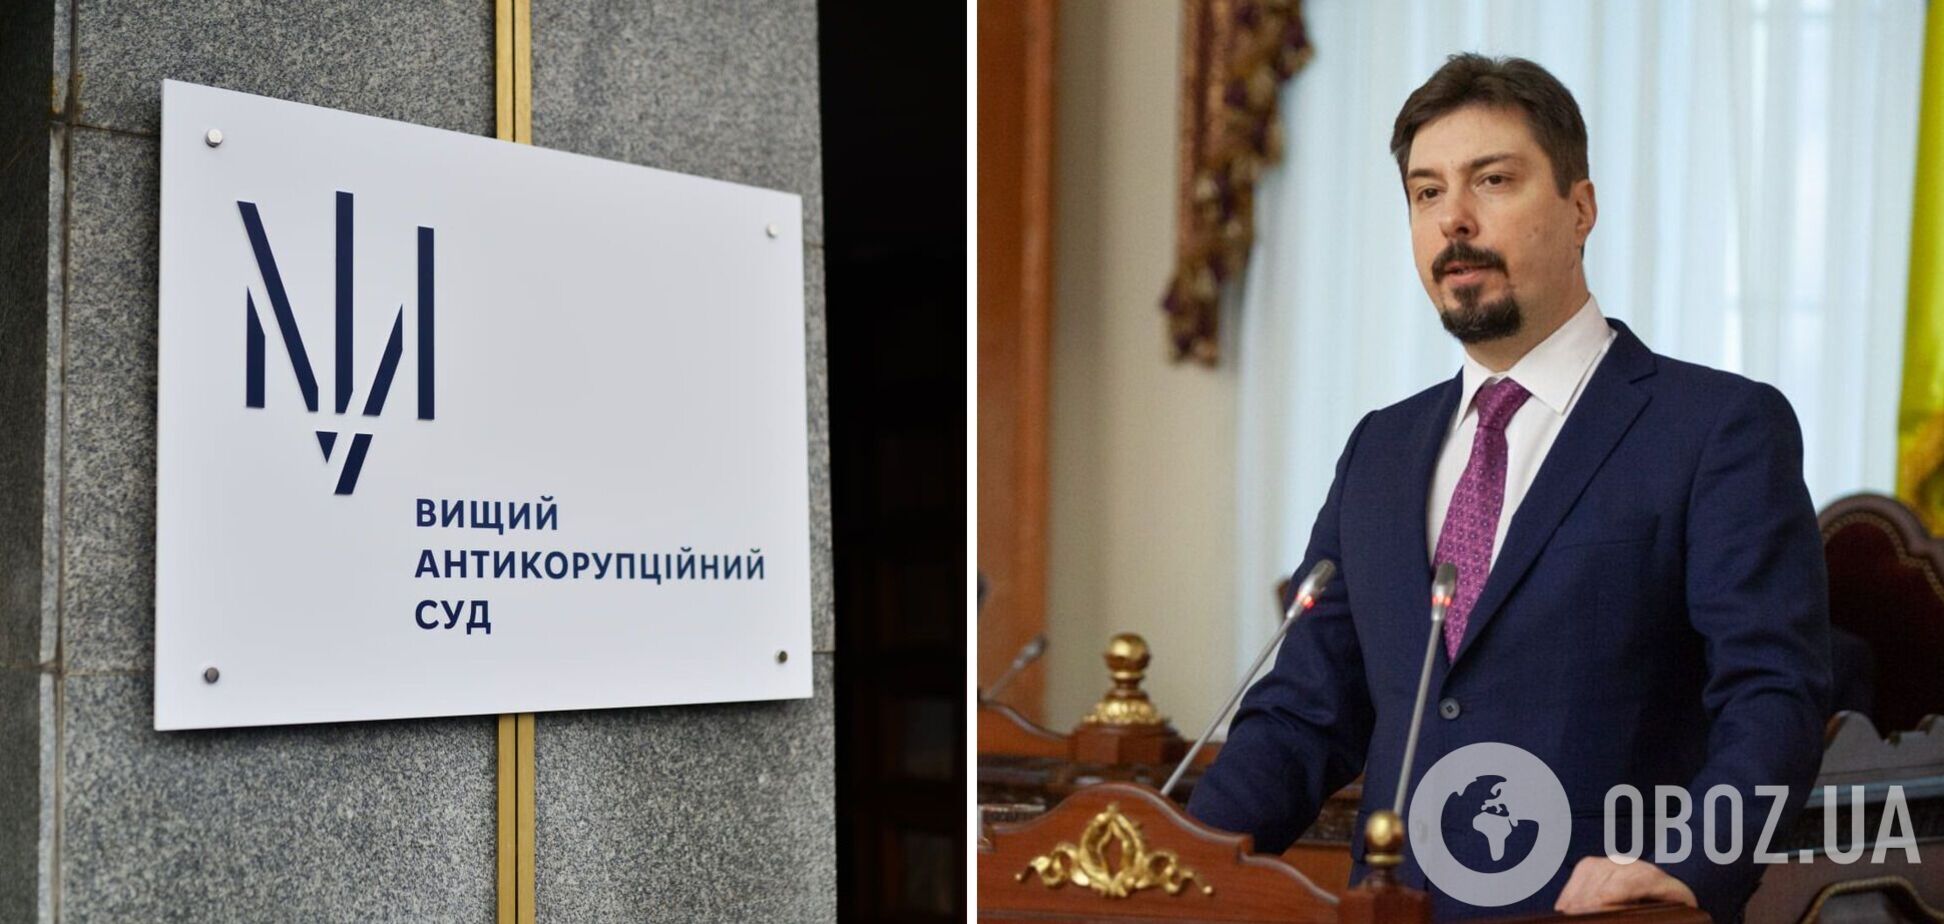 Соломонове рішення: апеляція ВАКС залишила ексголову Верховного суду Князєва під вартою, але зменшила заставу до 75 млн грн